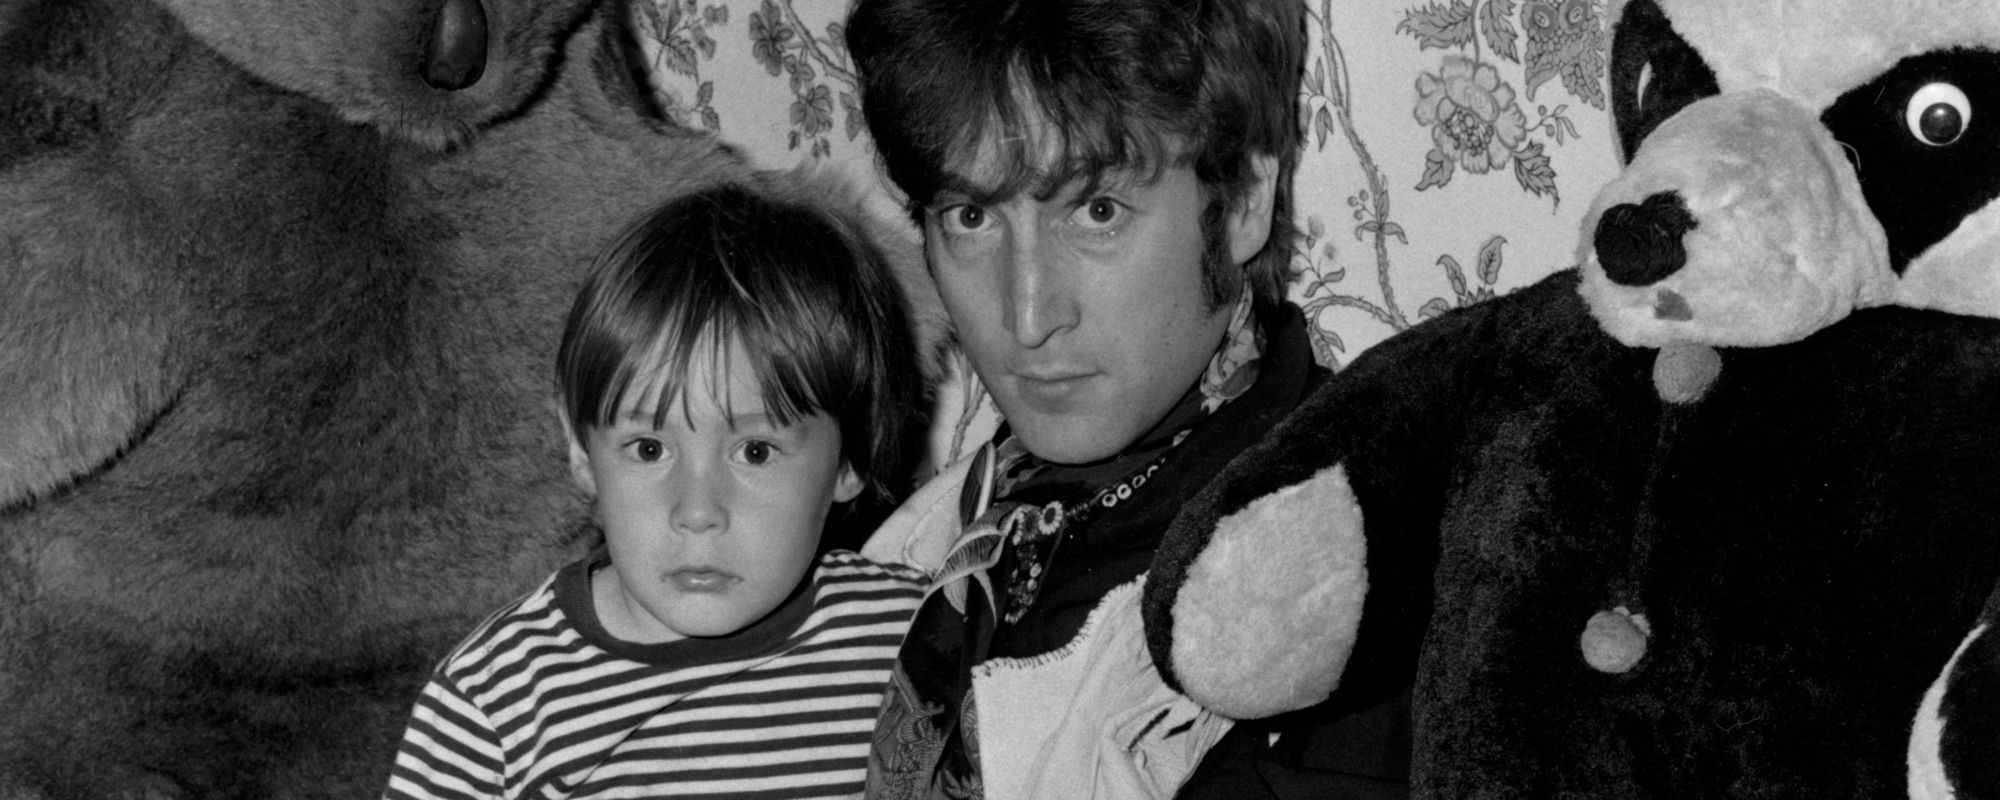 Julian Lennon sits in John Lennon's lap